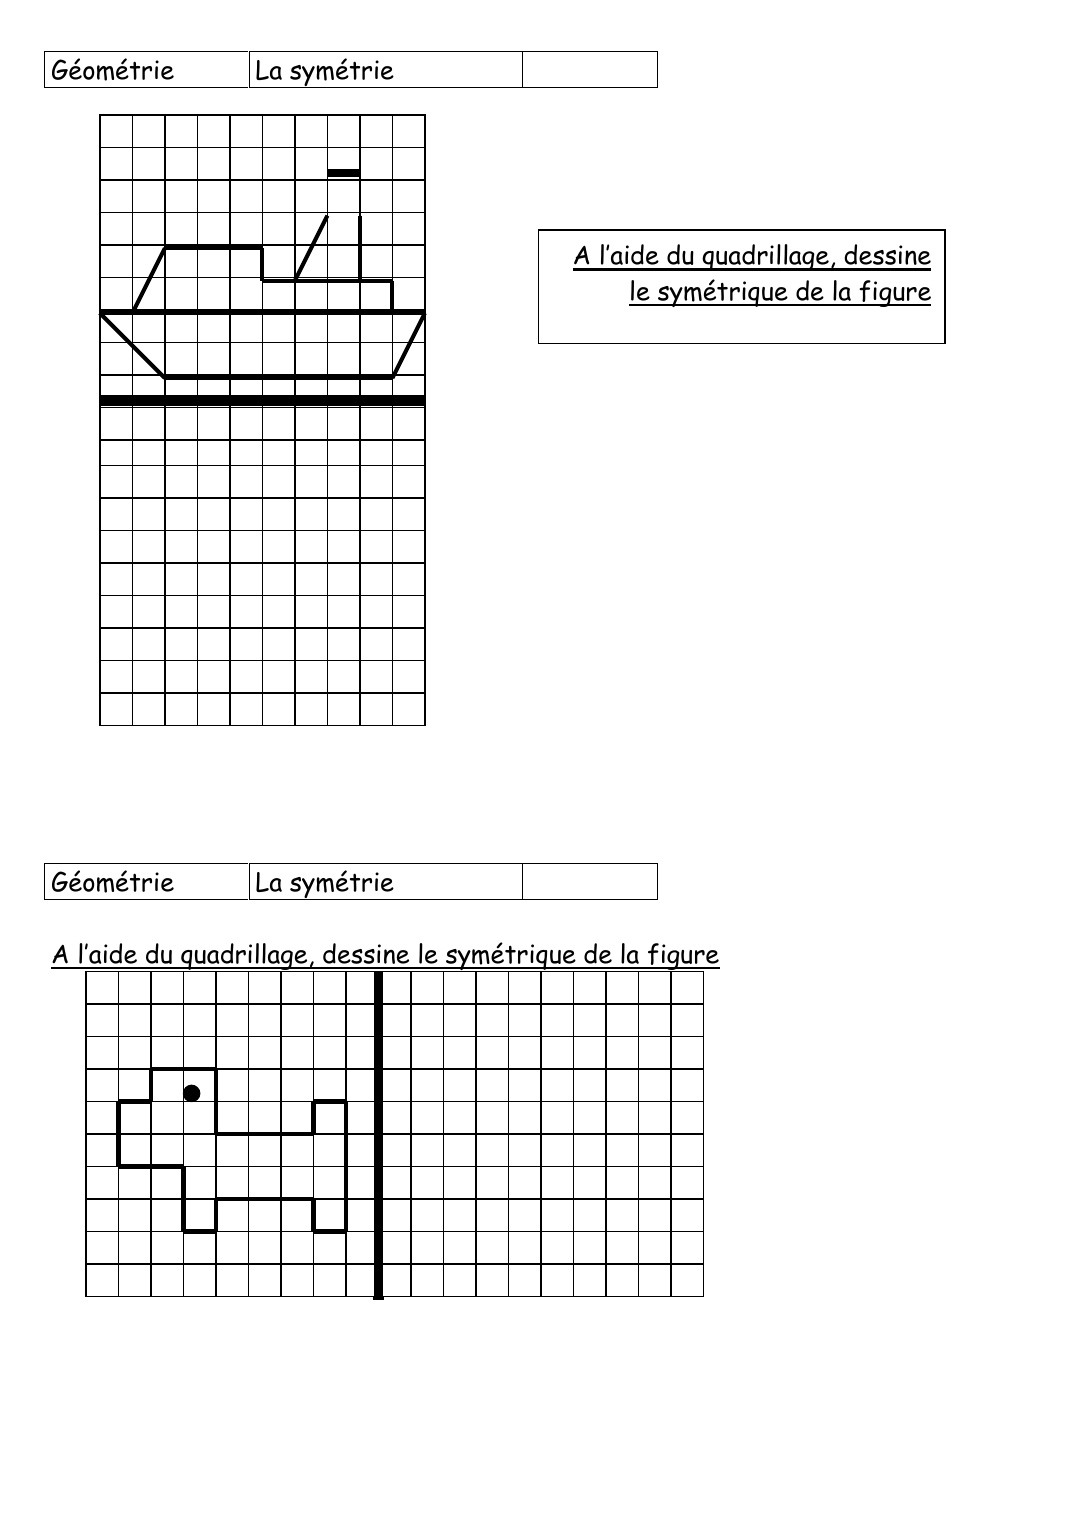 Prévisualisation du document GéométrieLa symétrieA l'aide du quadrillage, dessinele symétrique de la figureGéométrieLa